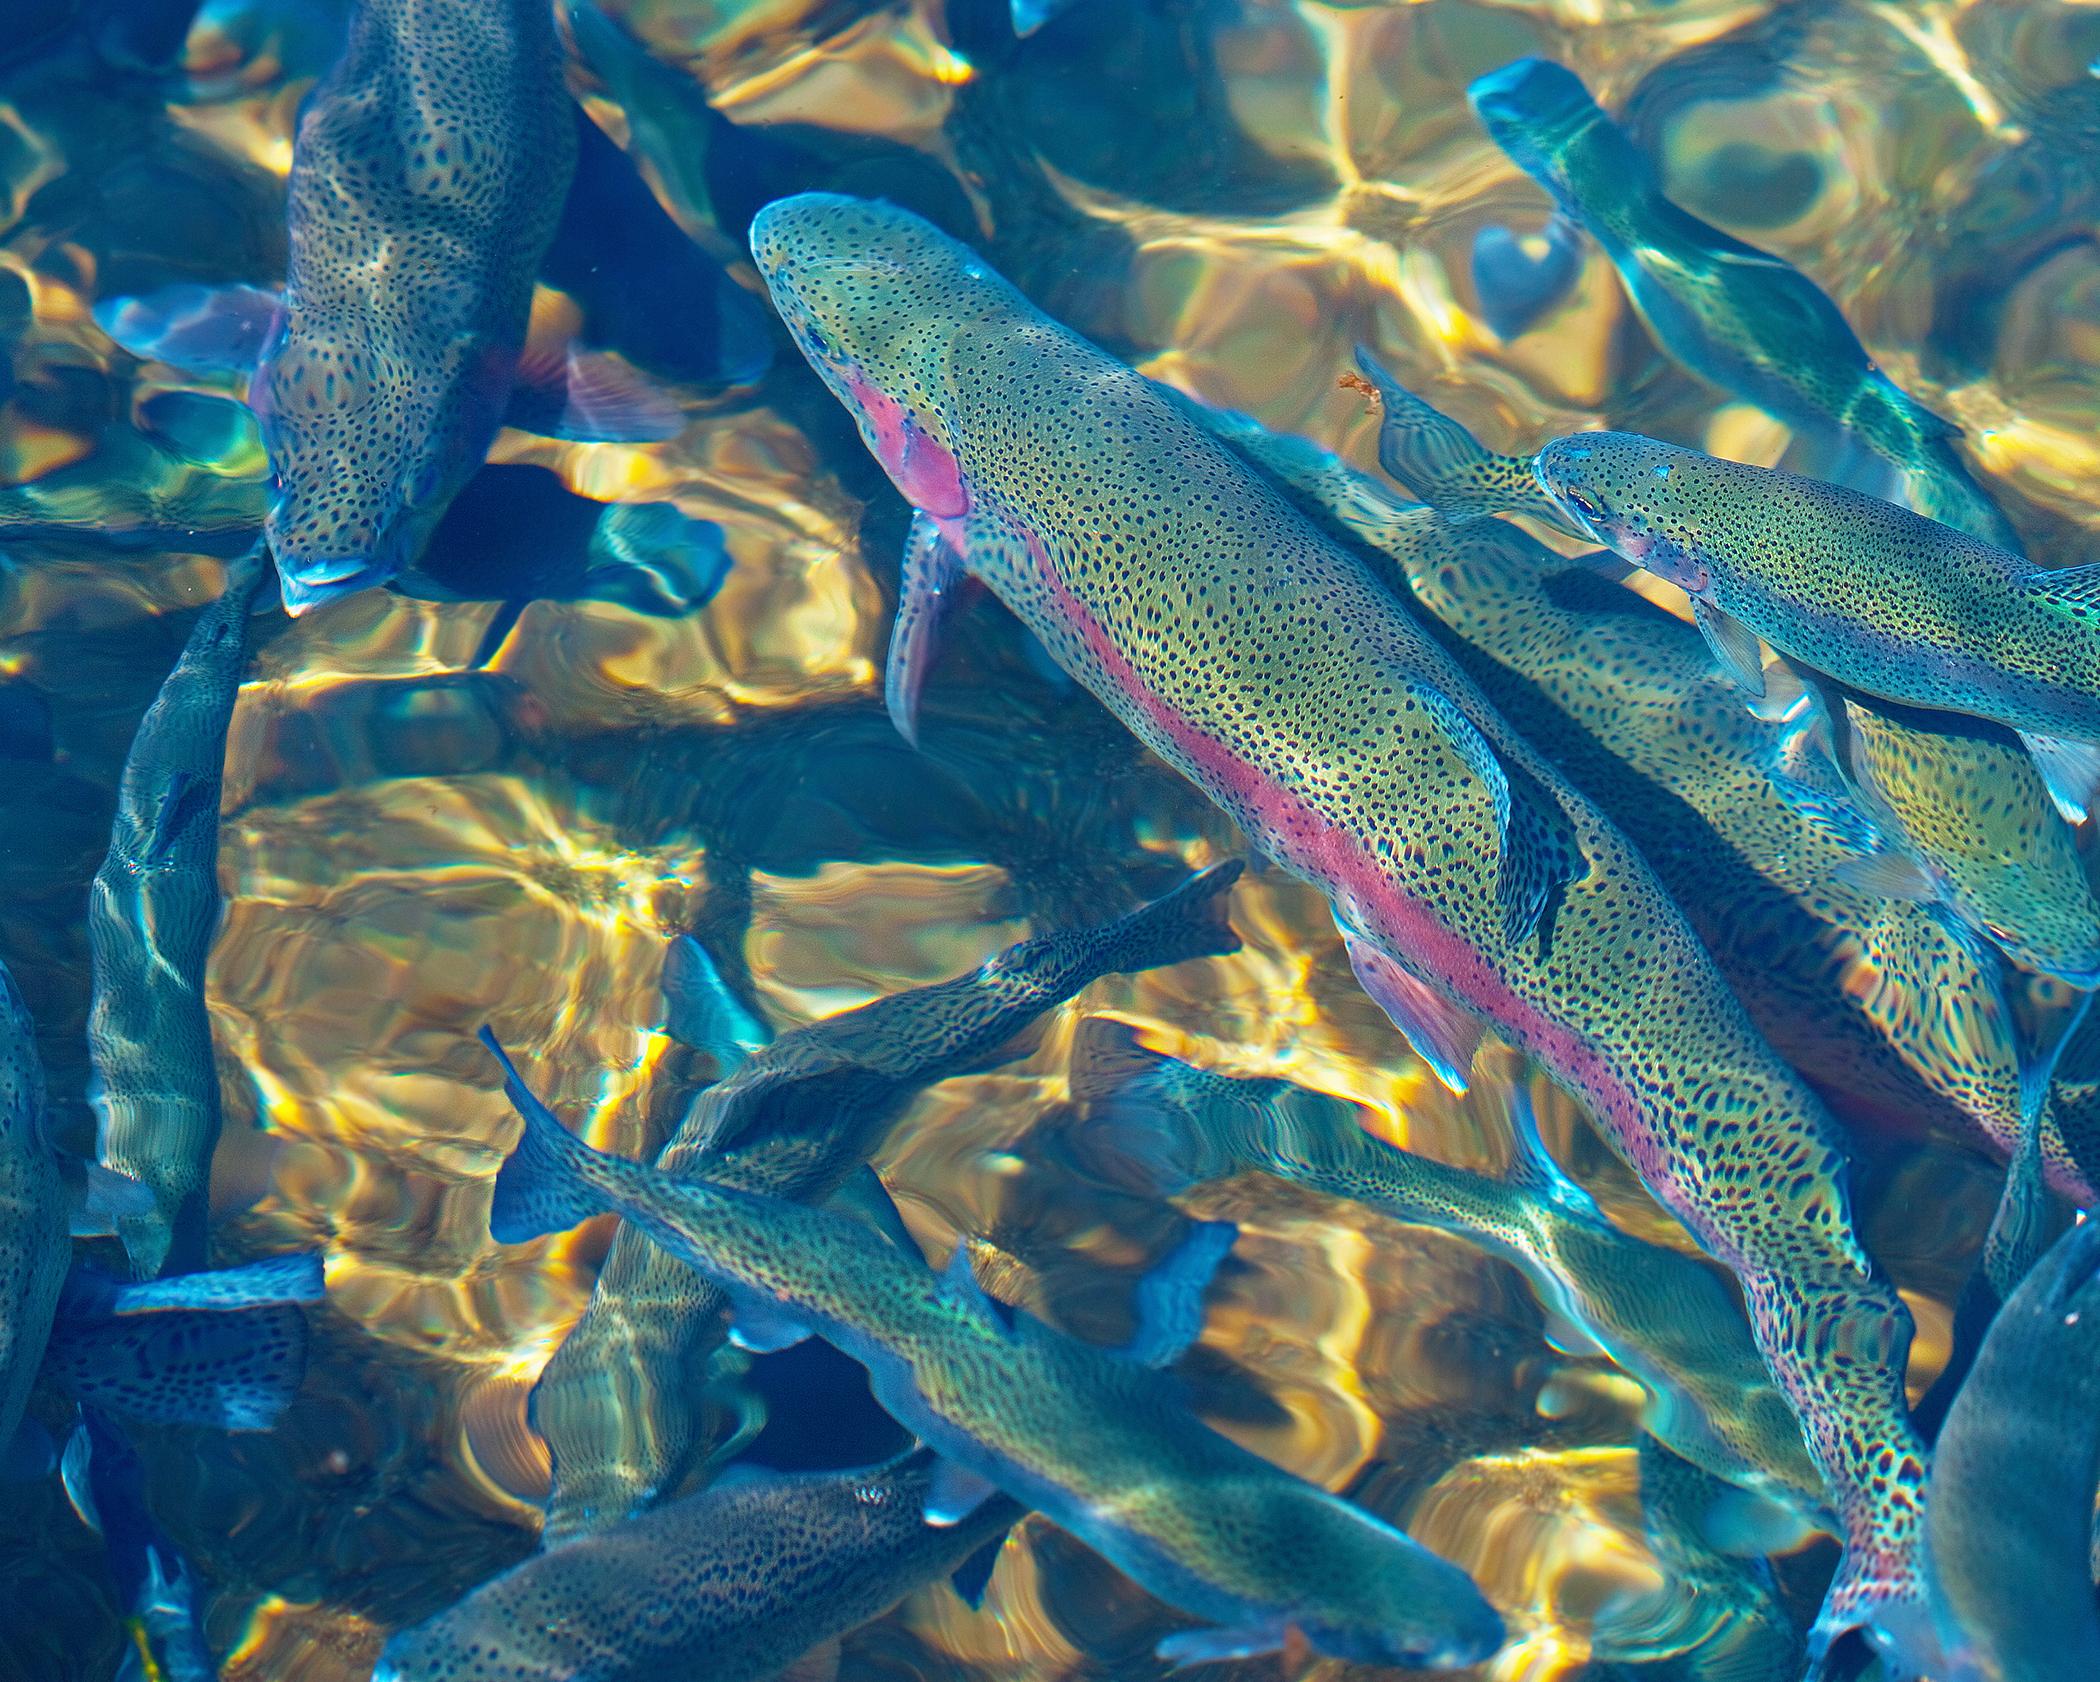 Rainbow trout raised in aquaculture farm